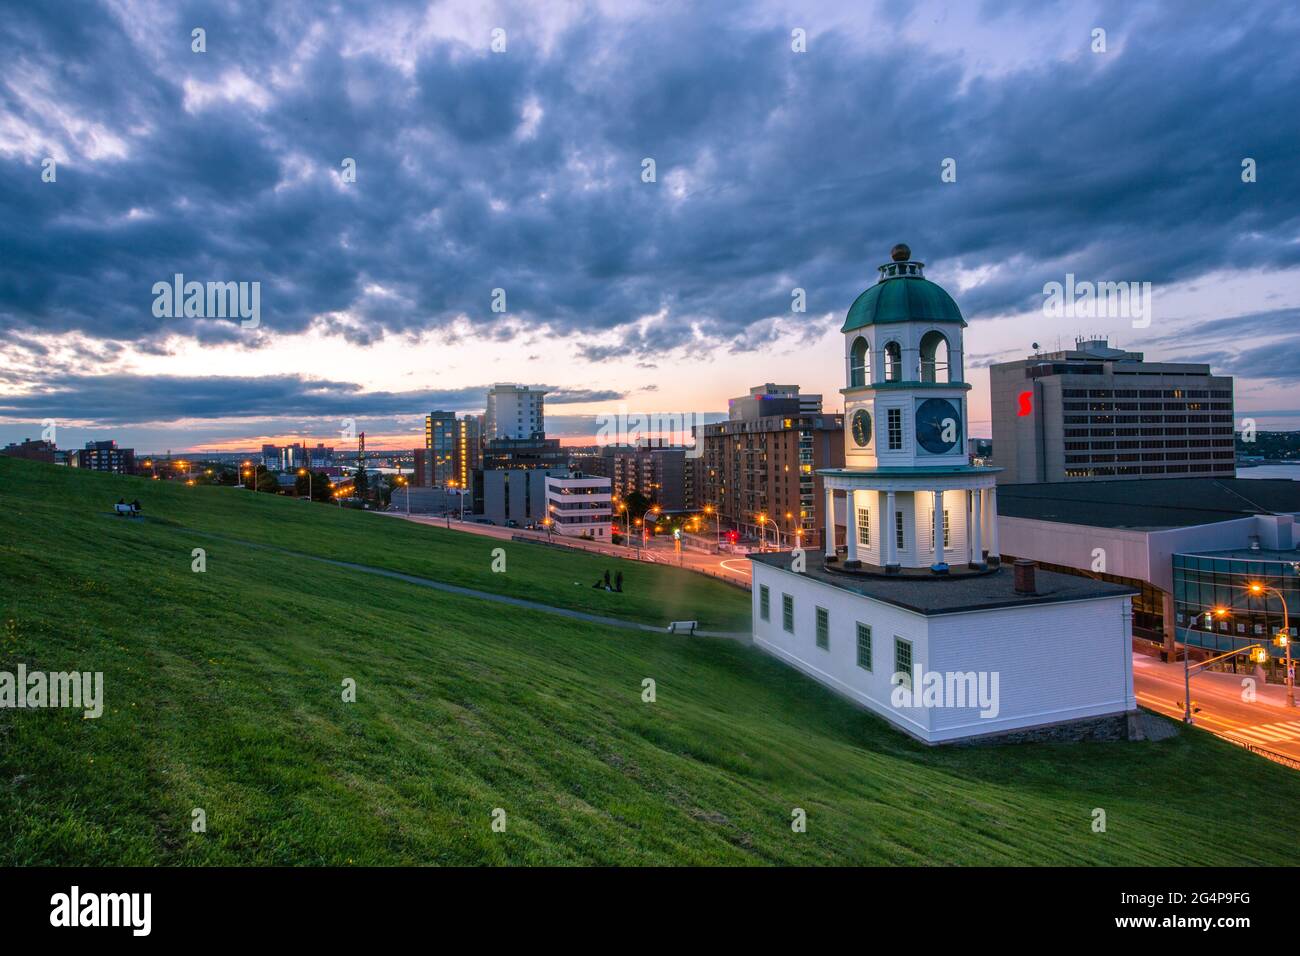 L'emblématique ville de 120 ans horloge Halifax, un monument historique de Halifax, Nouvelle-Écosse. Centre-ville de Halifax, vue depuis Citadel Hill surplombant le T. Banque D'Images